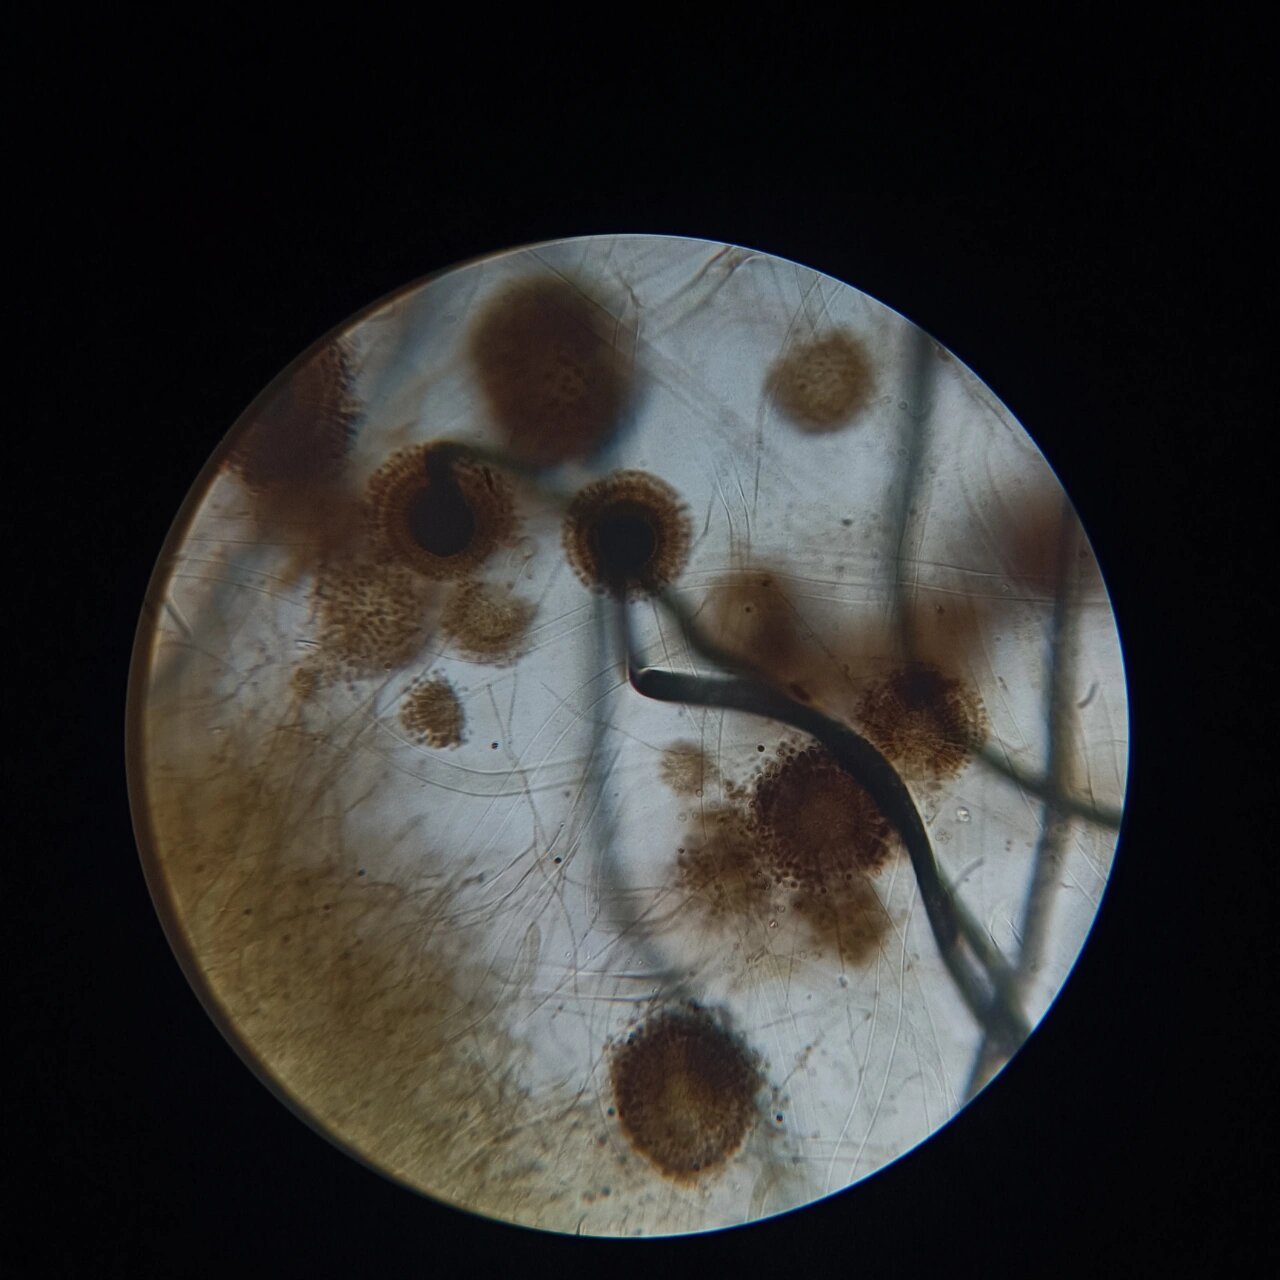 显微镜下的曲霉菌图片